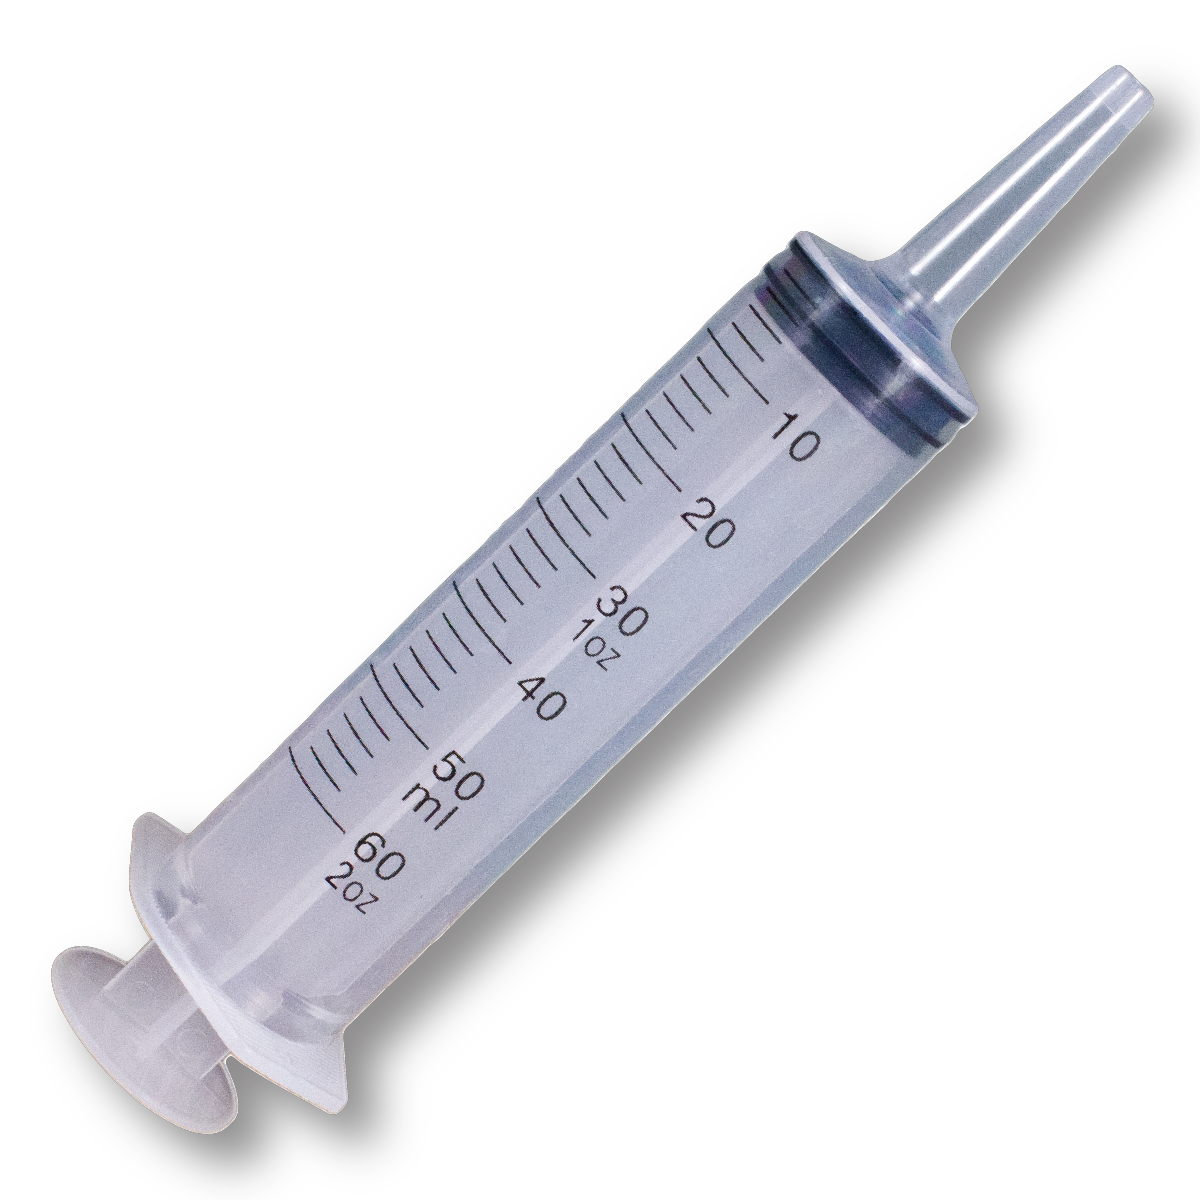 60 ml Syringe